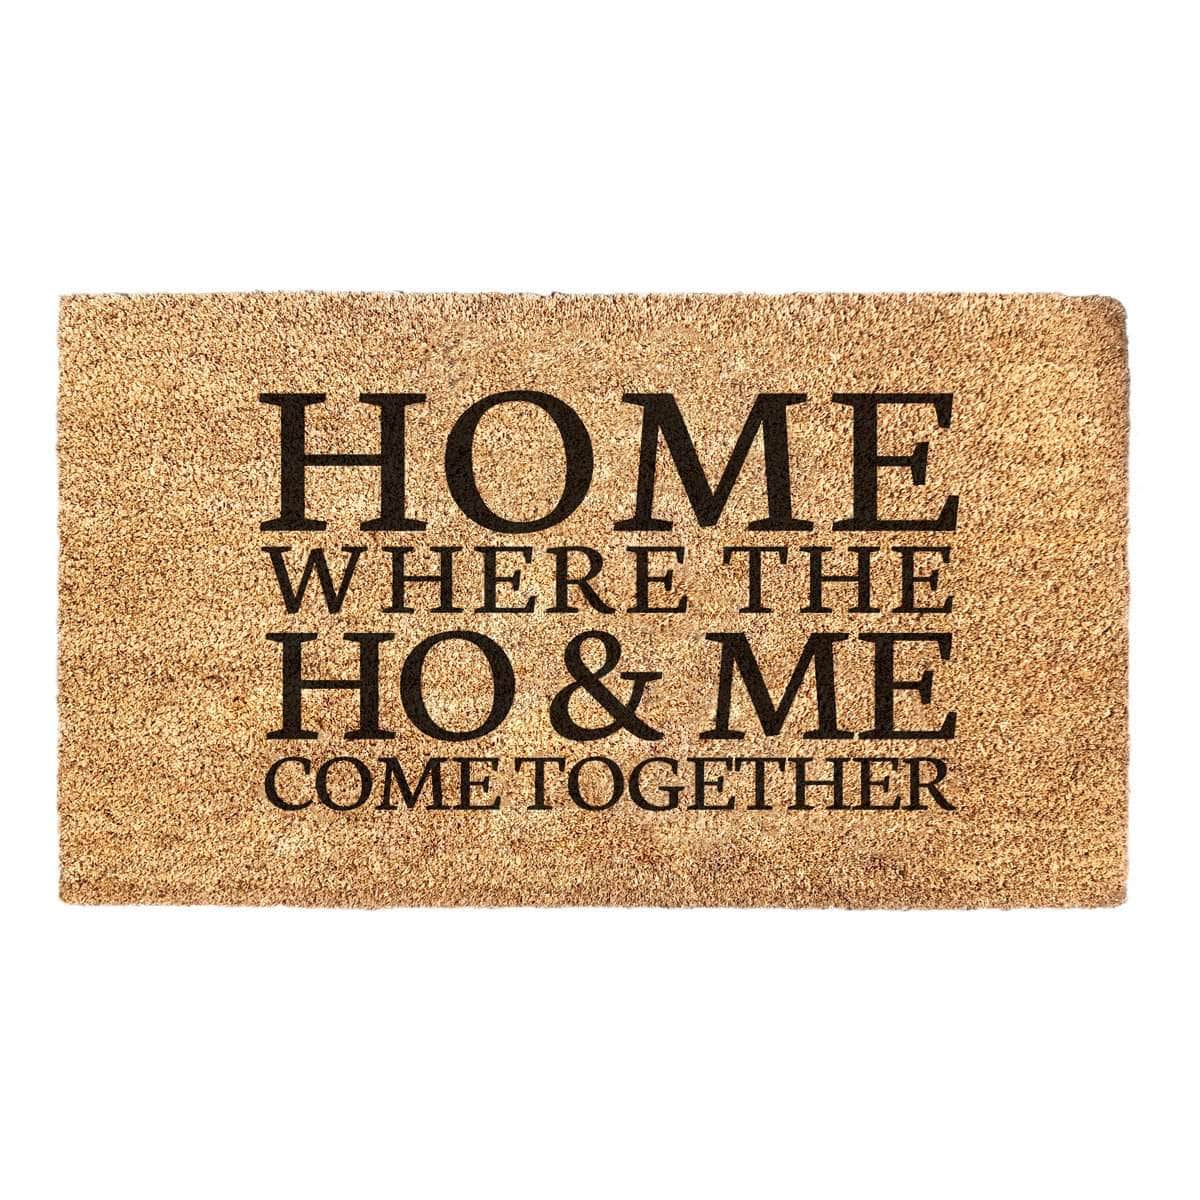 Ho & Me Come Together - Doormat